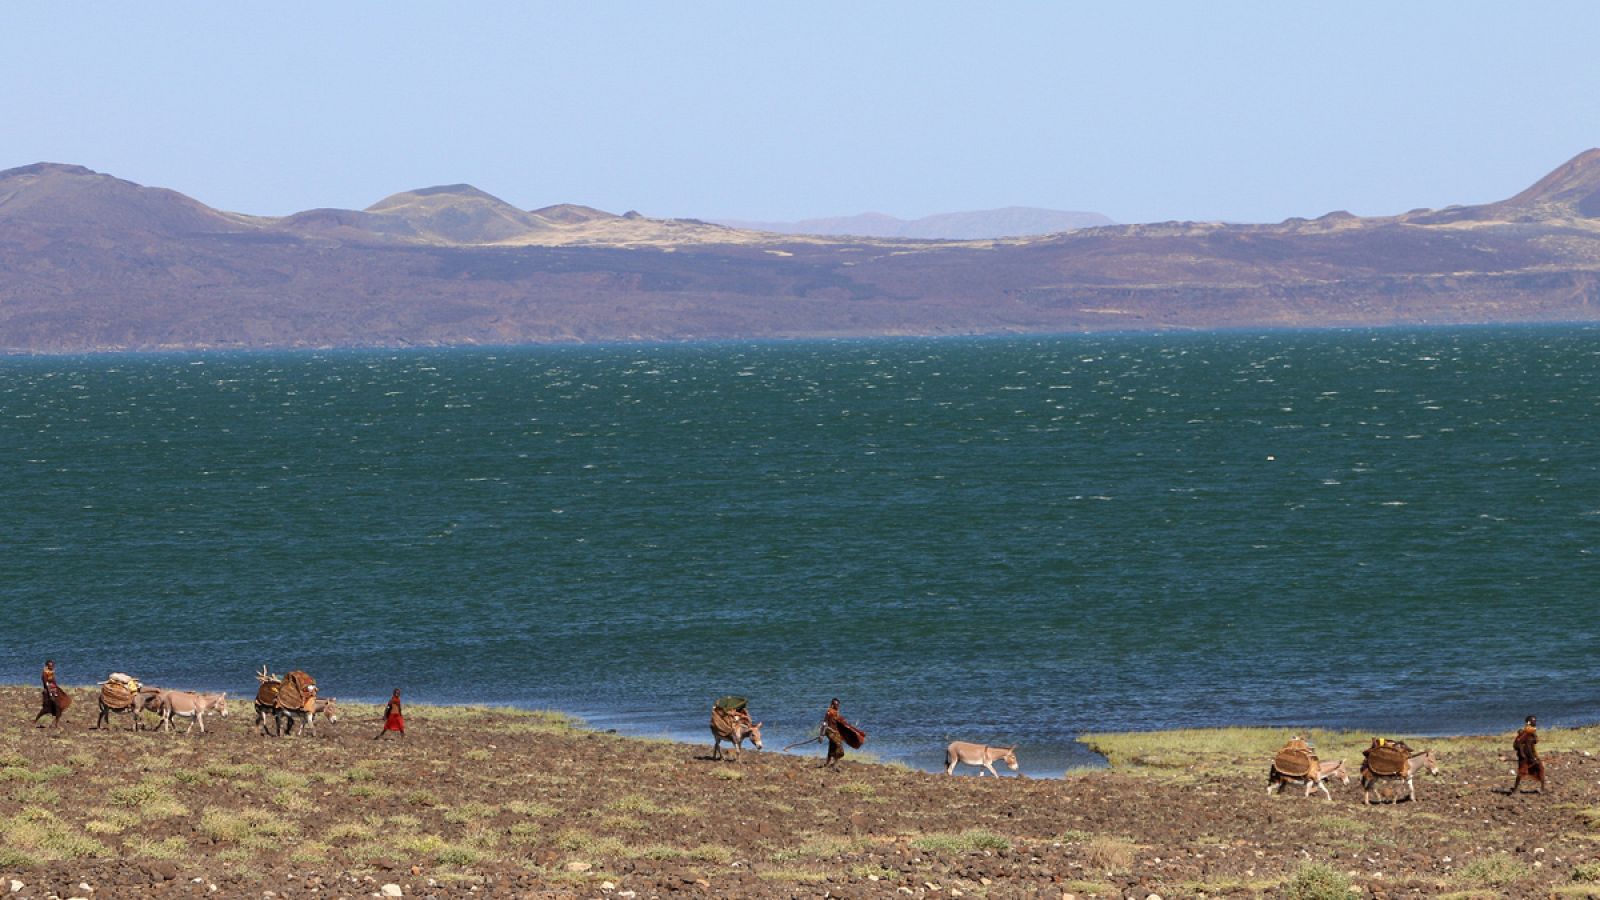 Miembros actuales del pueblo Turkana, junto al lago del mismo nombre.